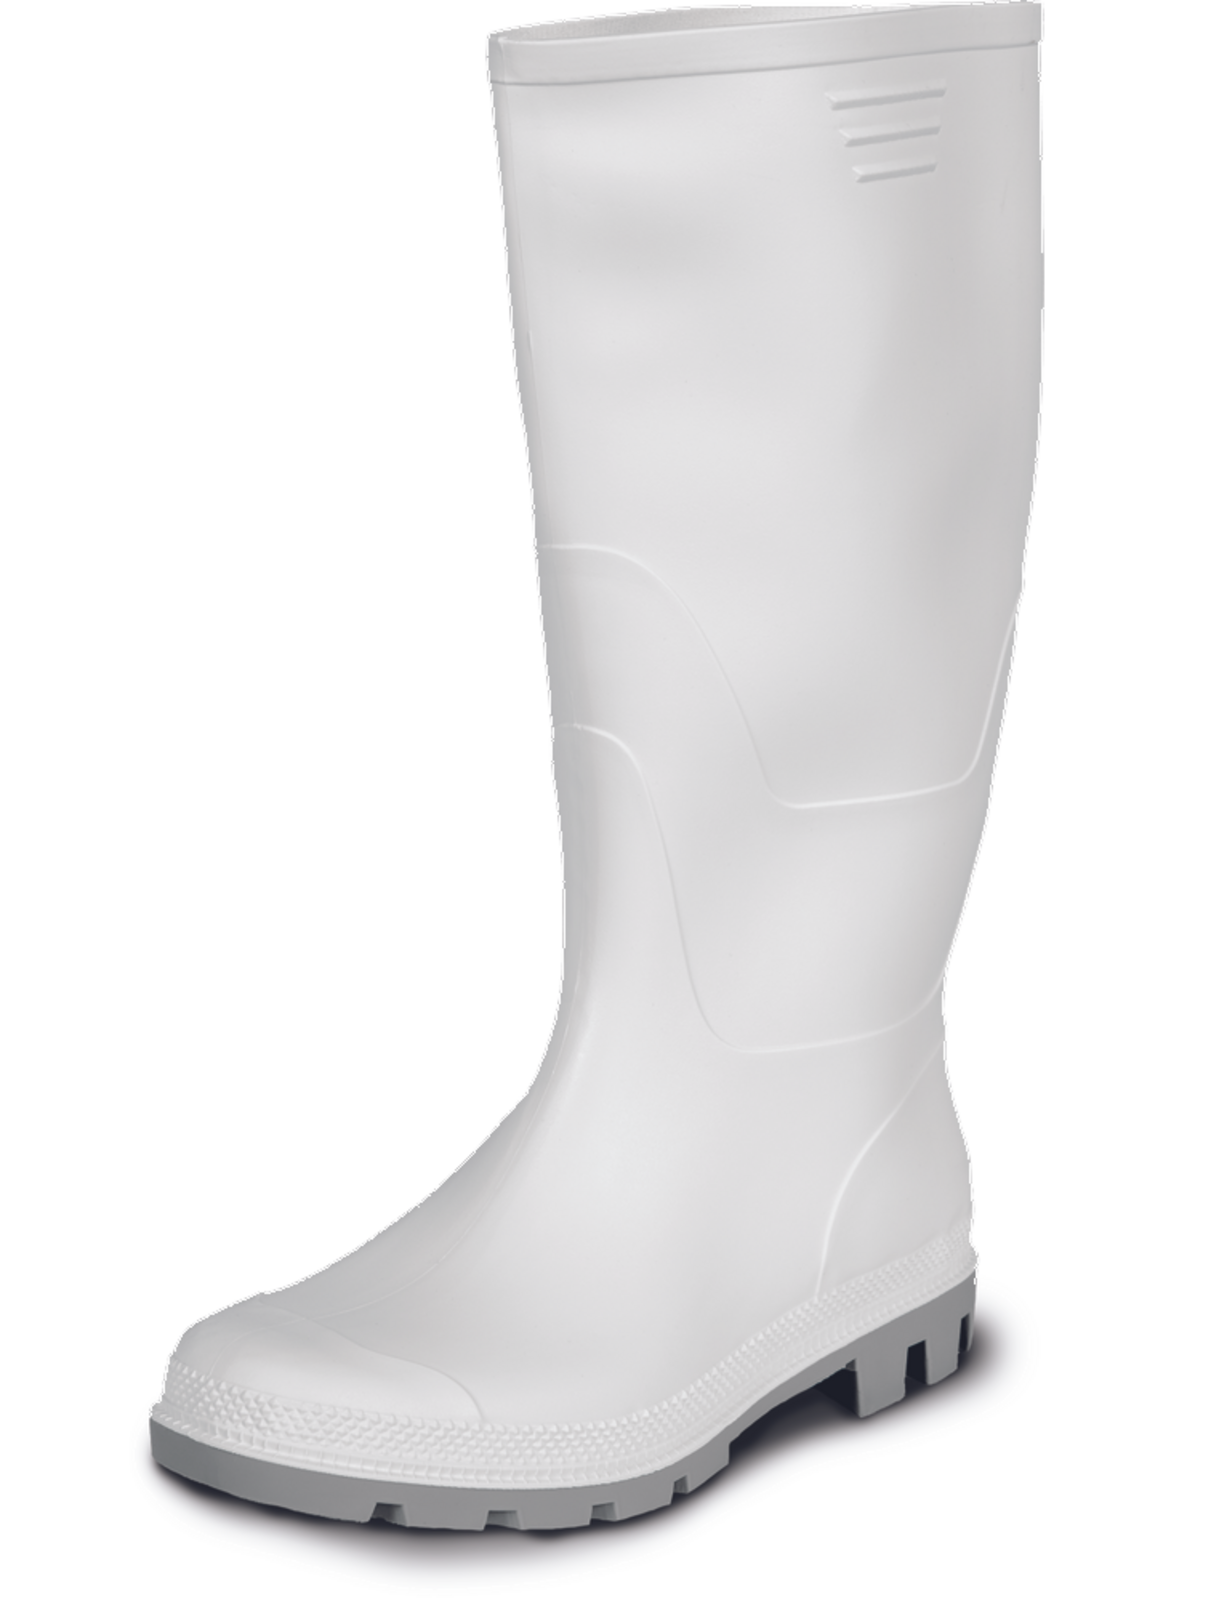 Gumáky Boots Ginocchio PVC - veľkosť: 40, farba: biela